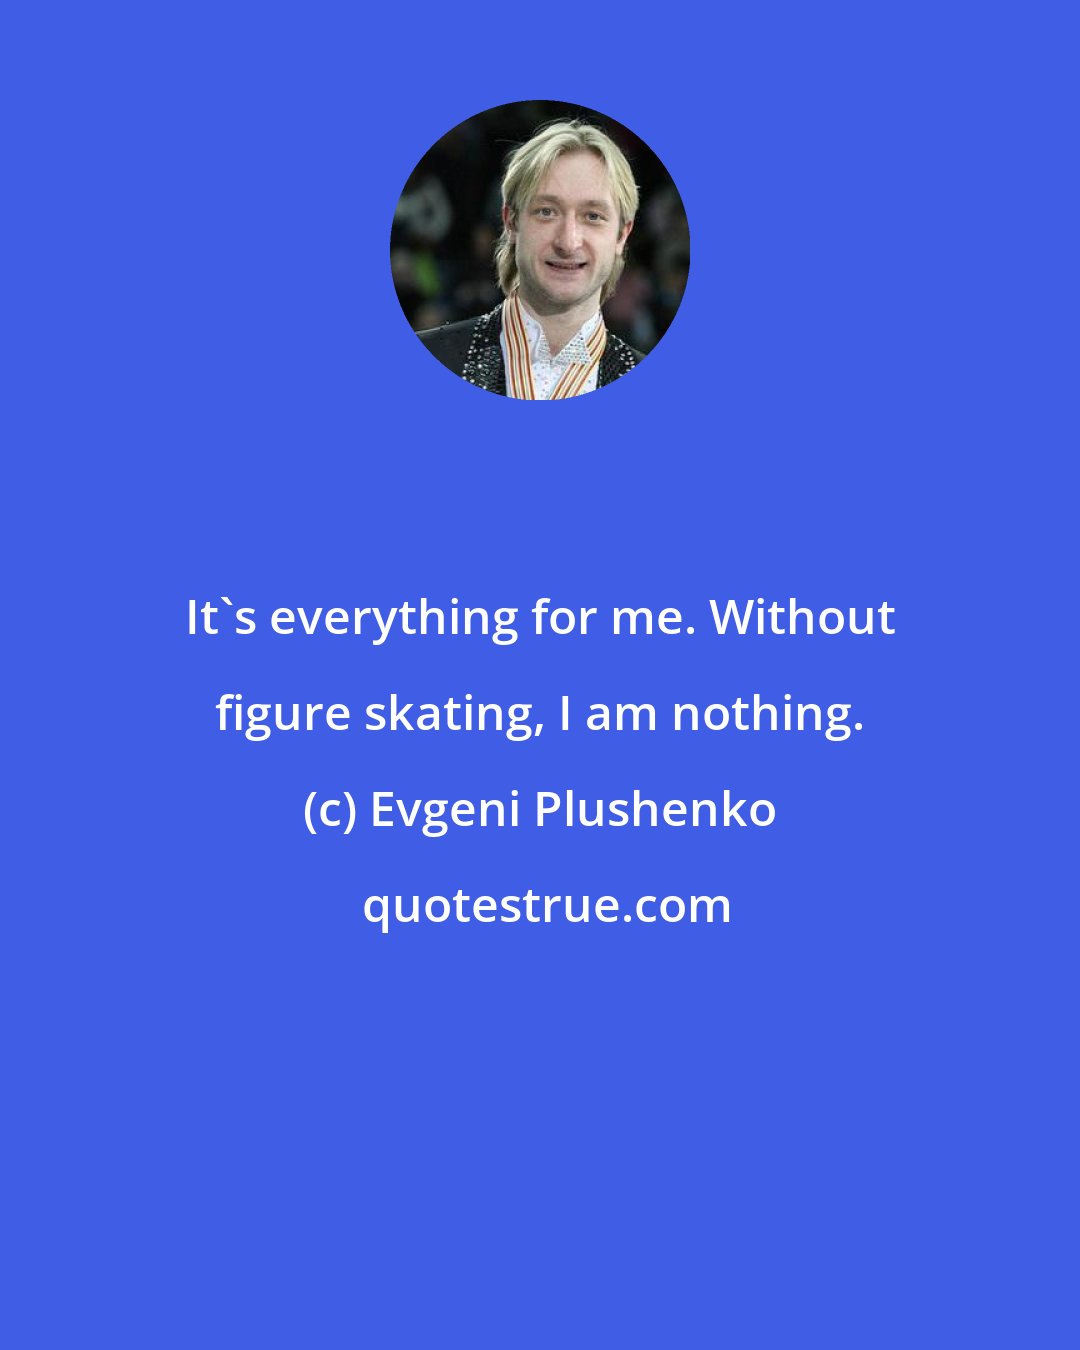 Evgeni Plushenko: It's everything for me. Without figure skating, I am nothing.